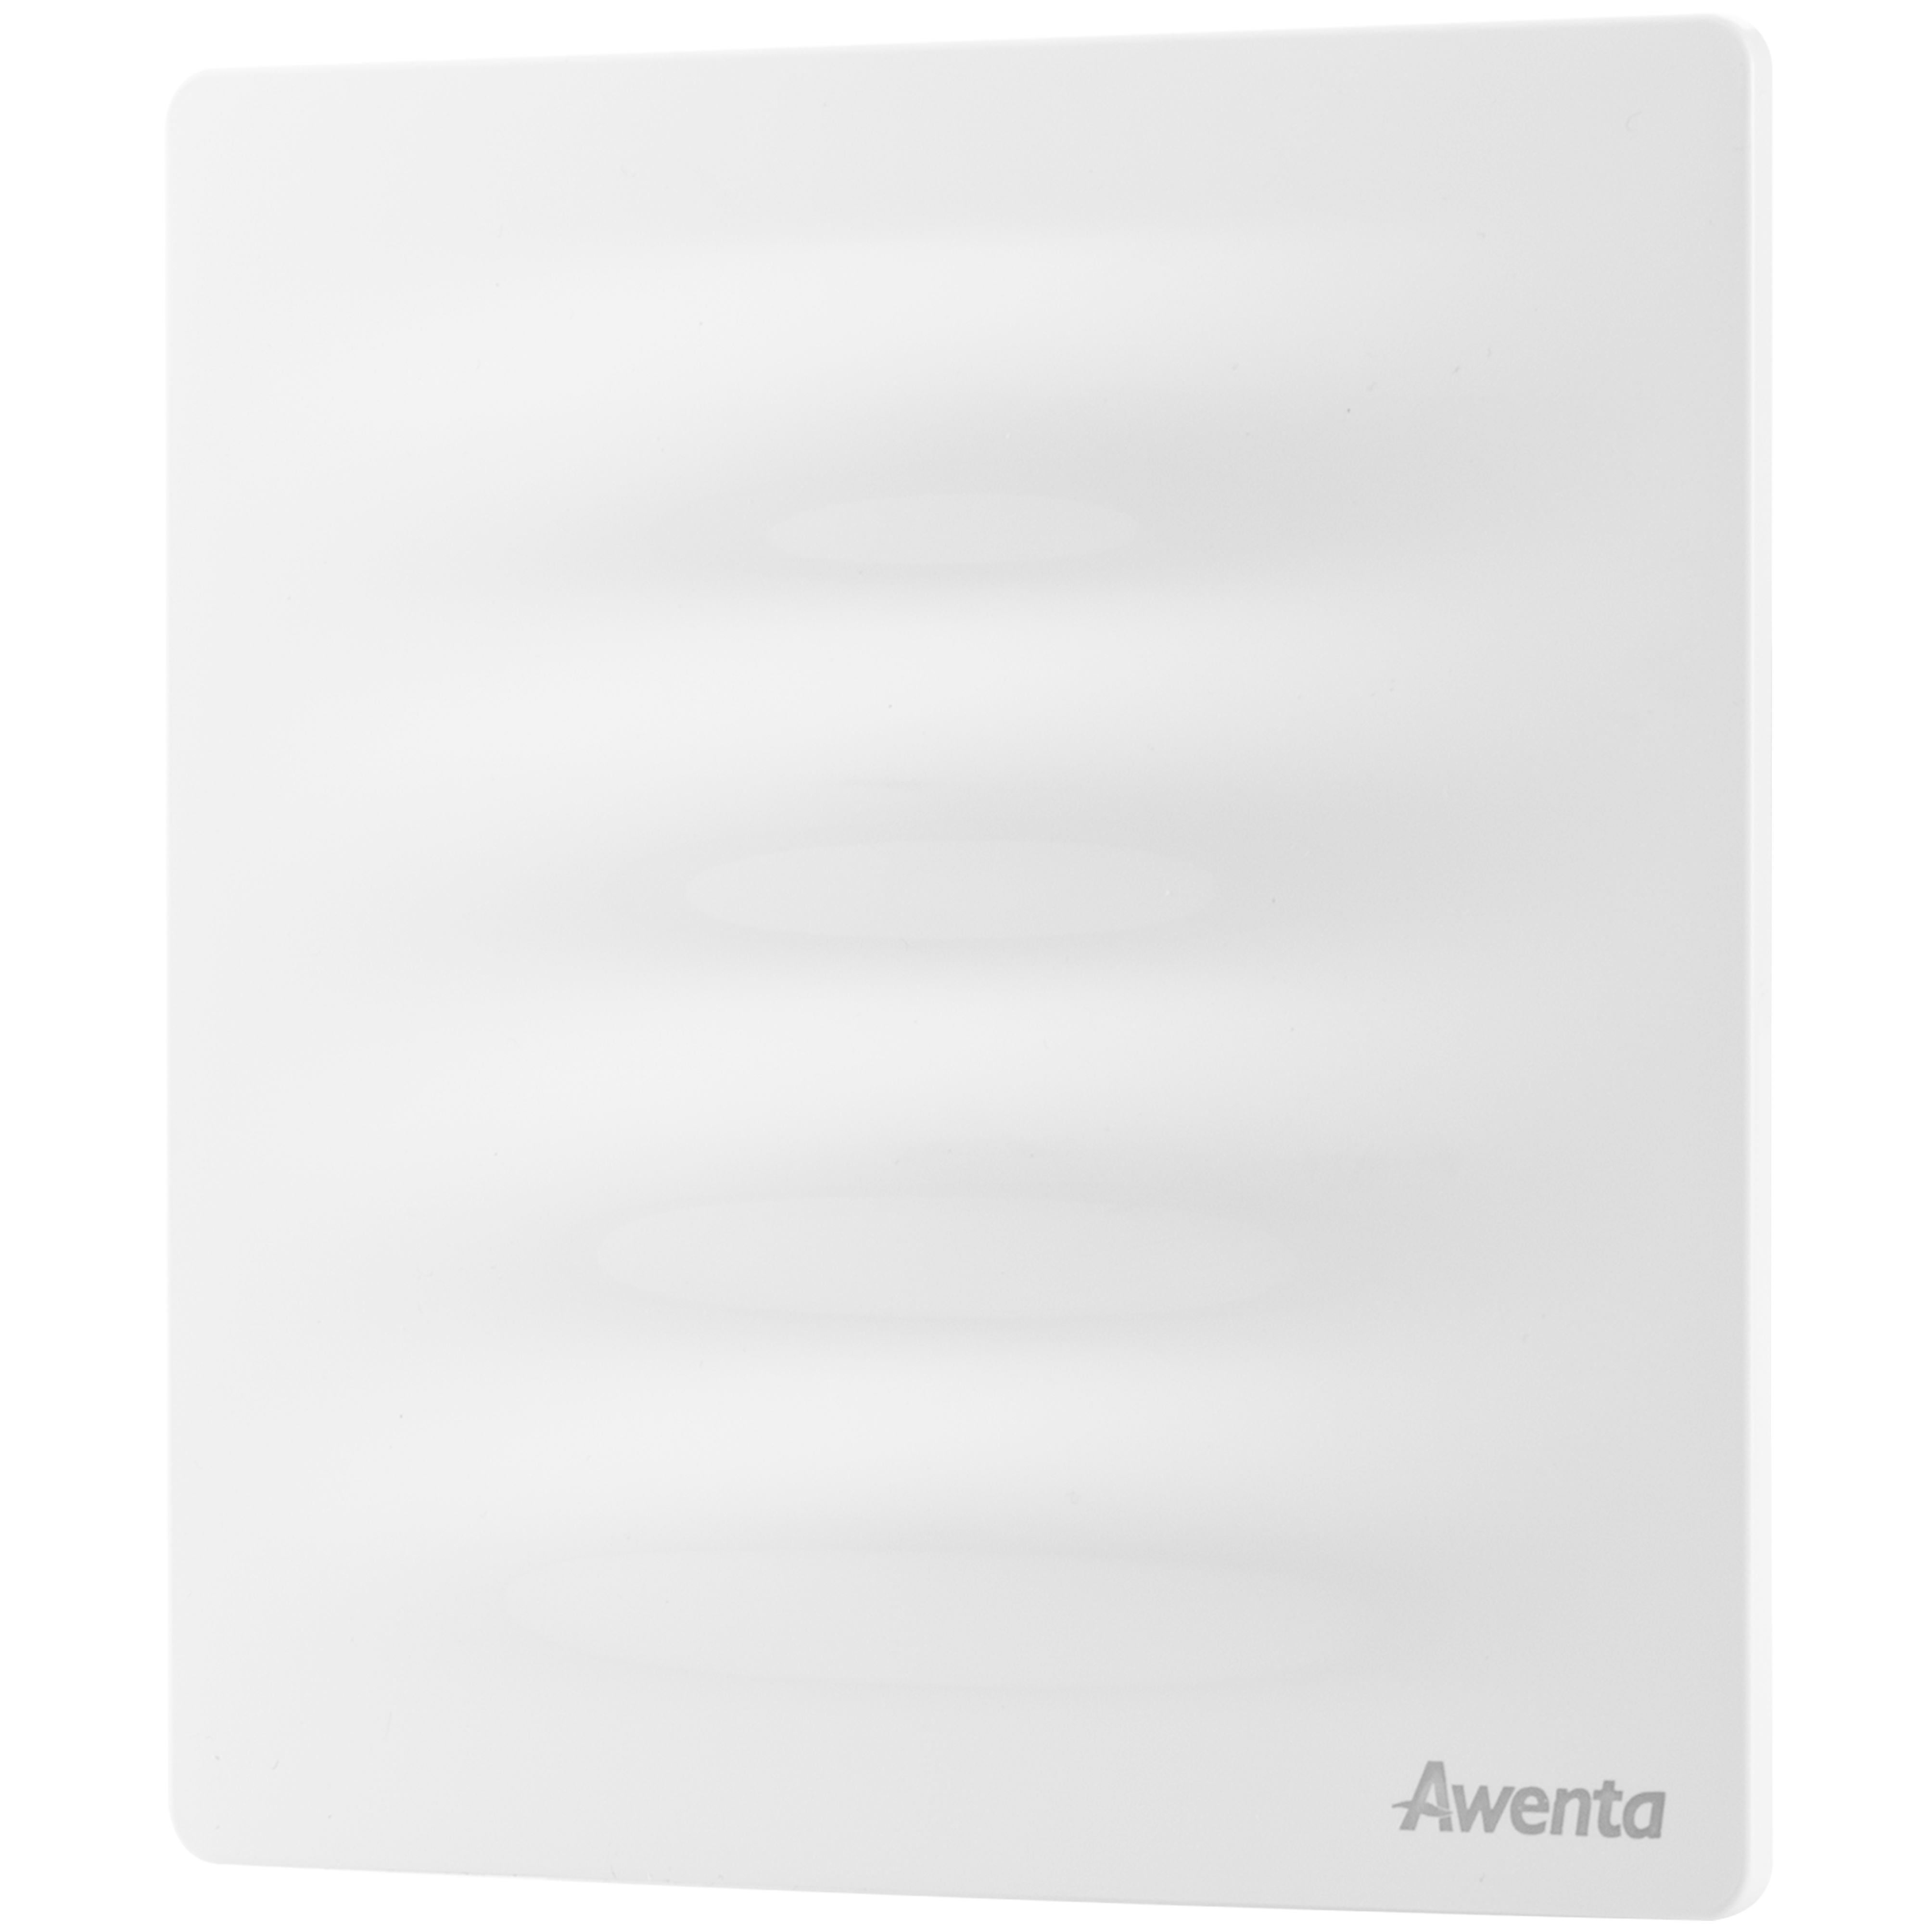 Awenta Vertico PVB100 White